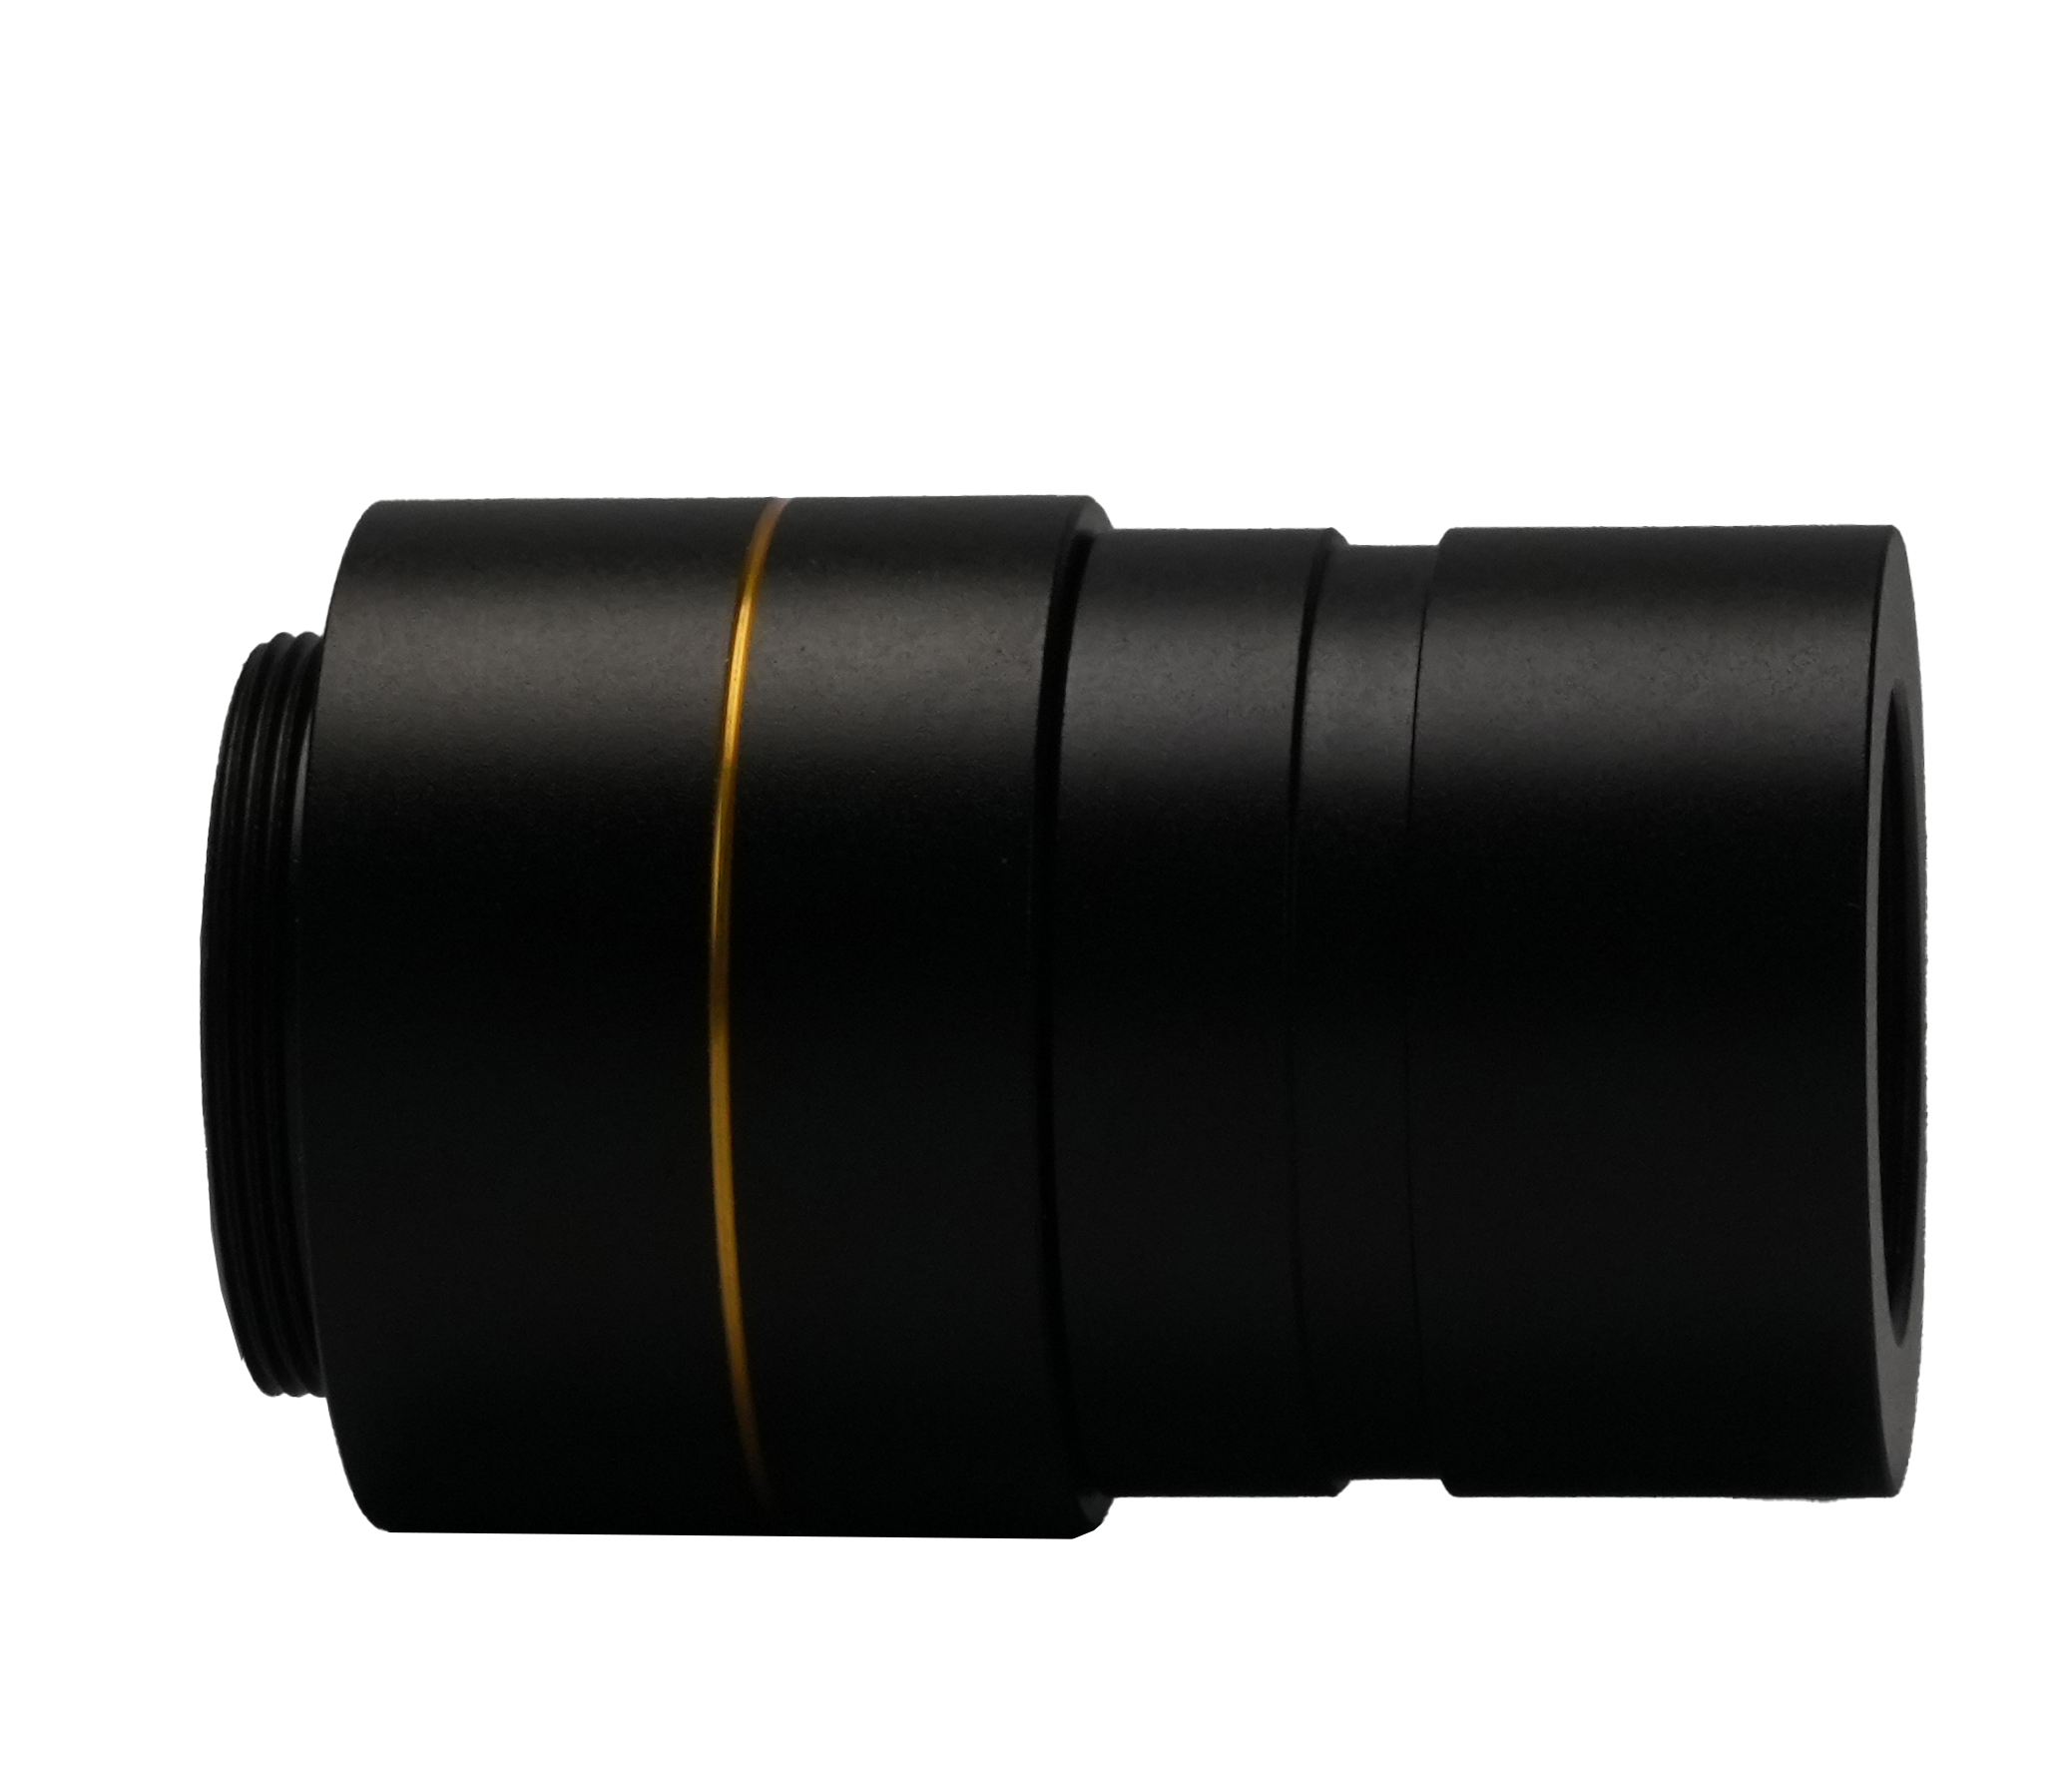 BCN3F-0.5x Adaptador d'ocular de microscopi fix de 31,75 mm